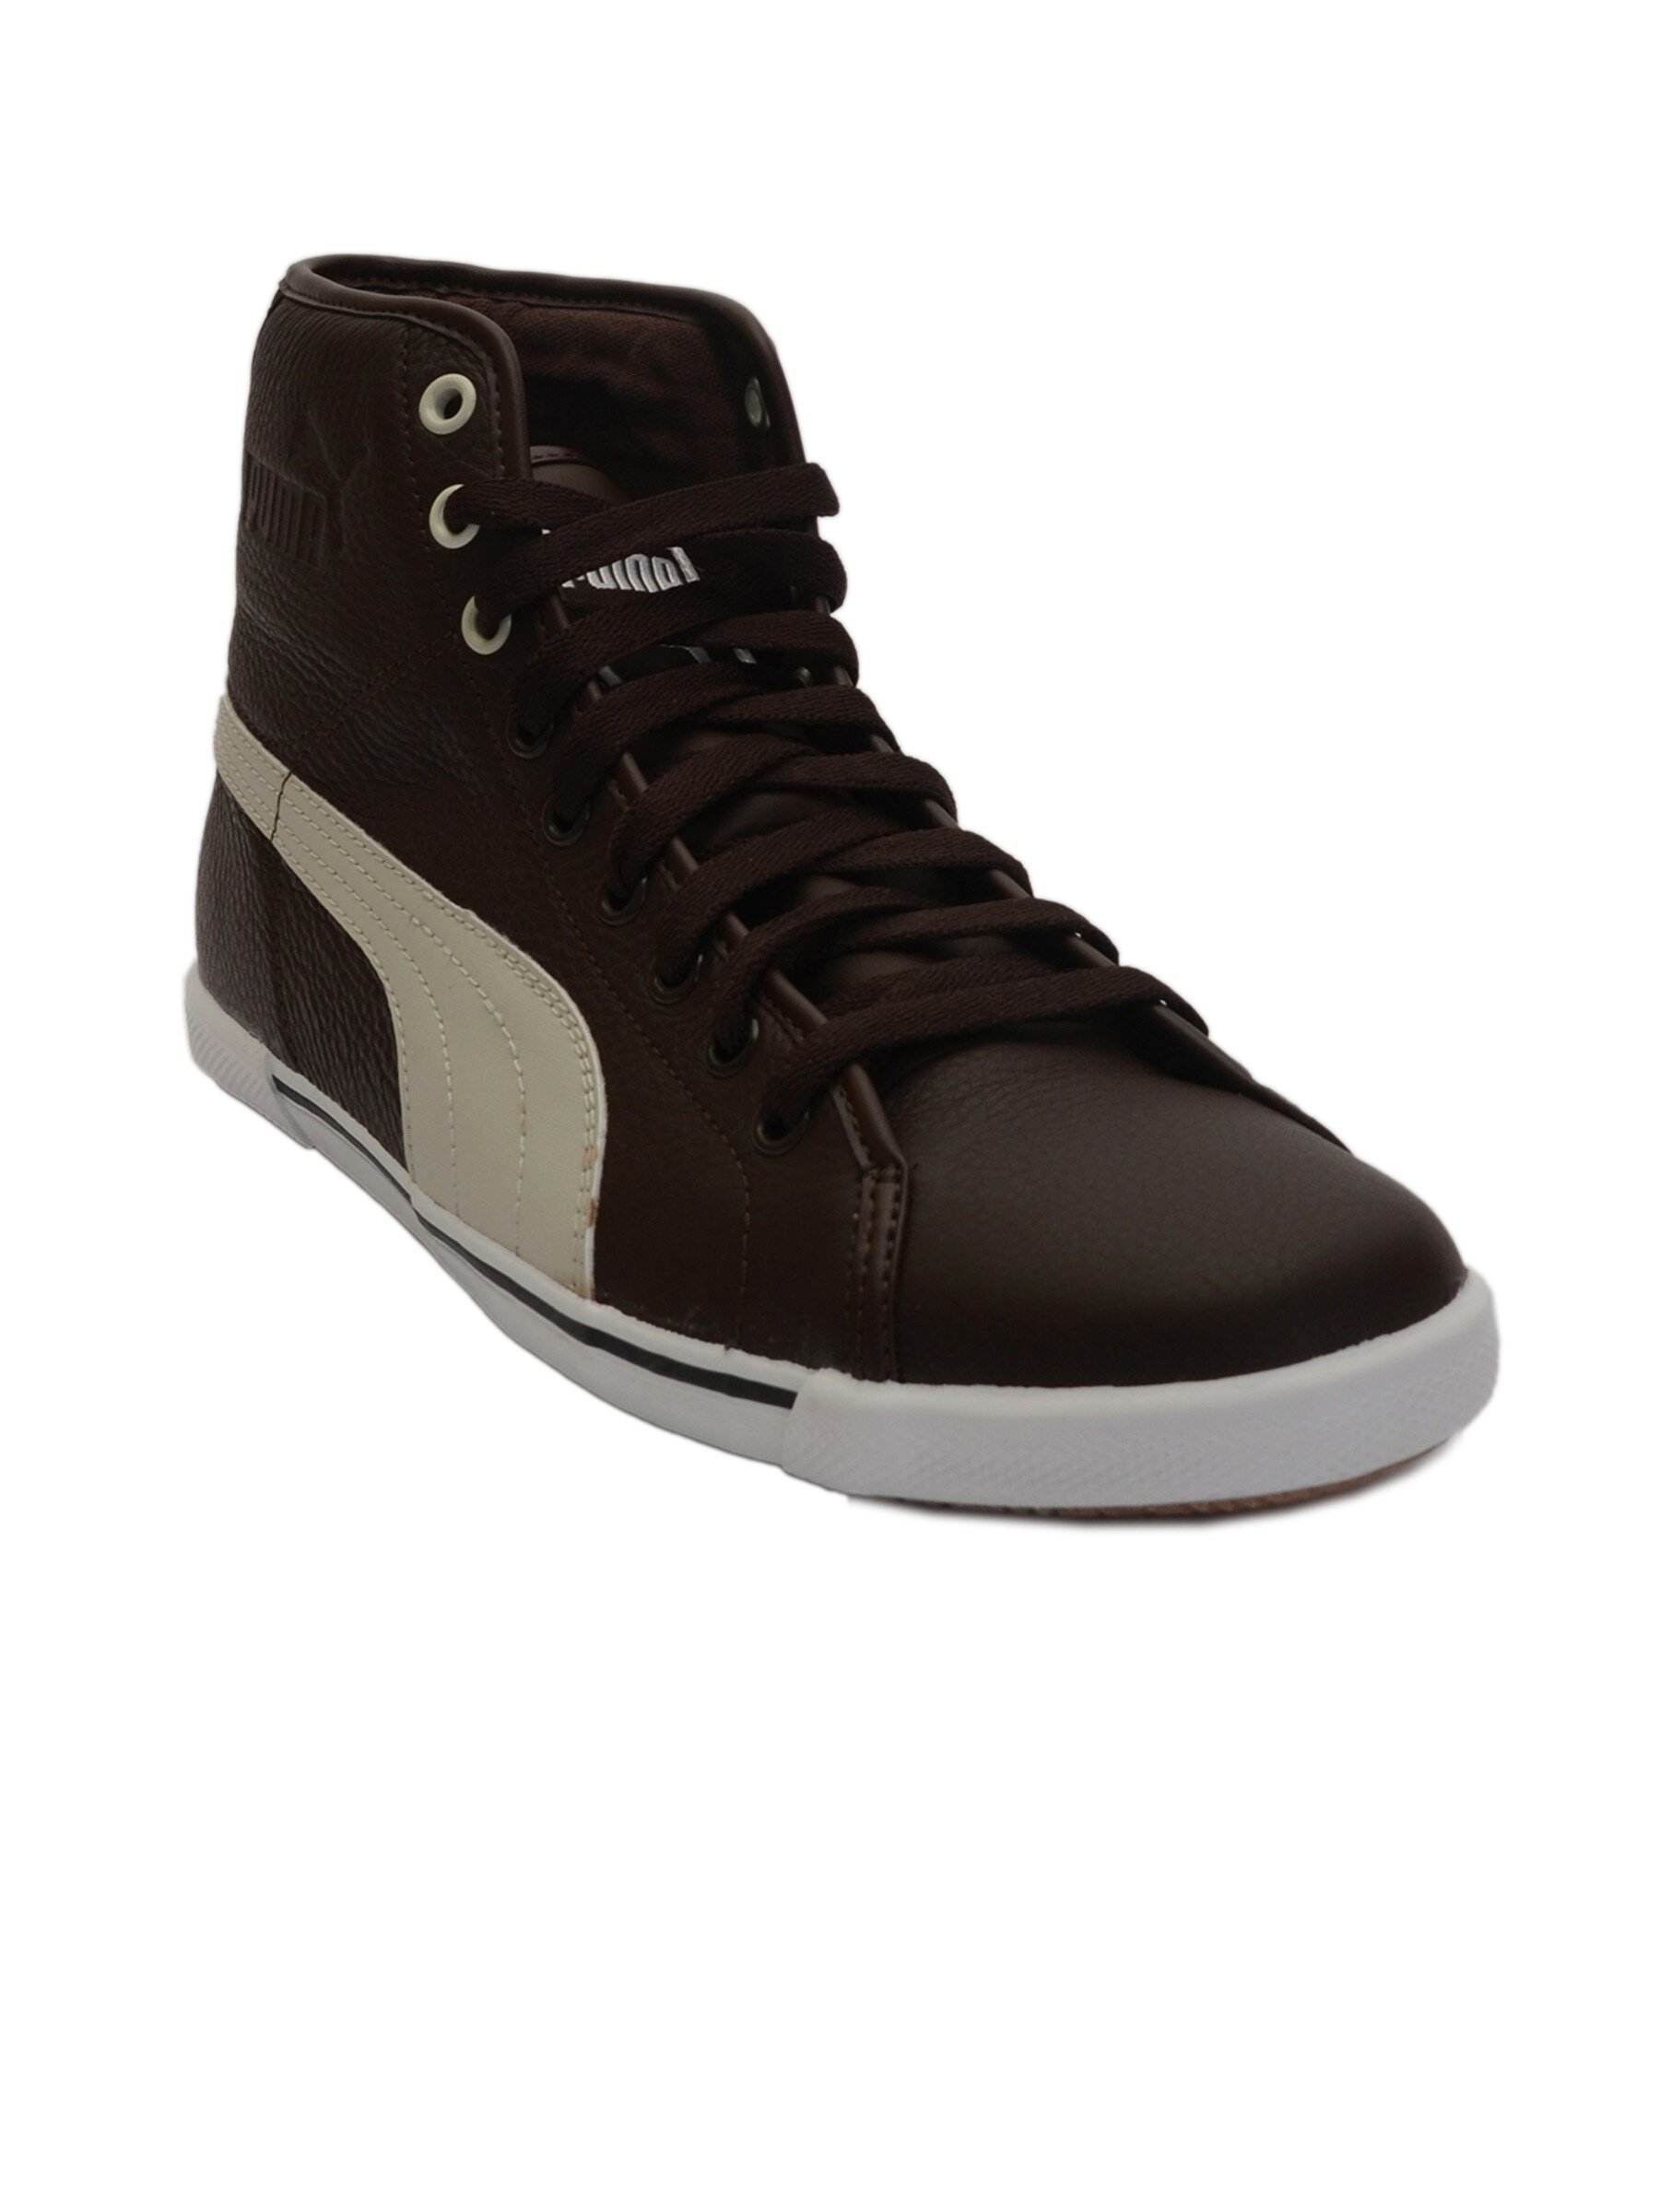 Puma Men Benecio Mid Leather Brown Casual Shoes